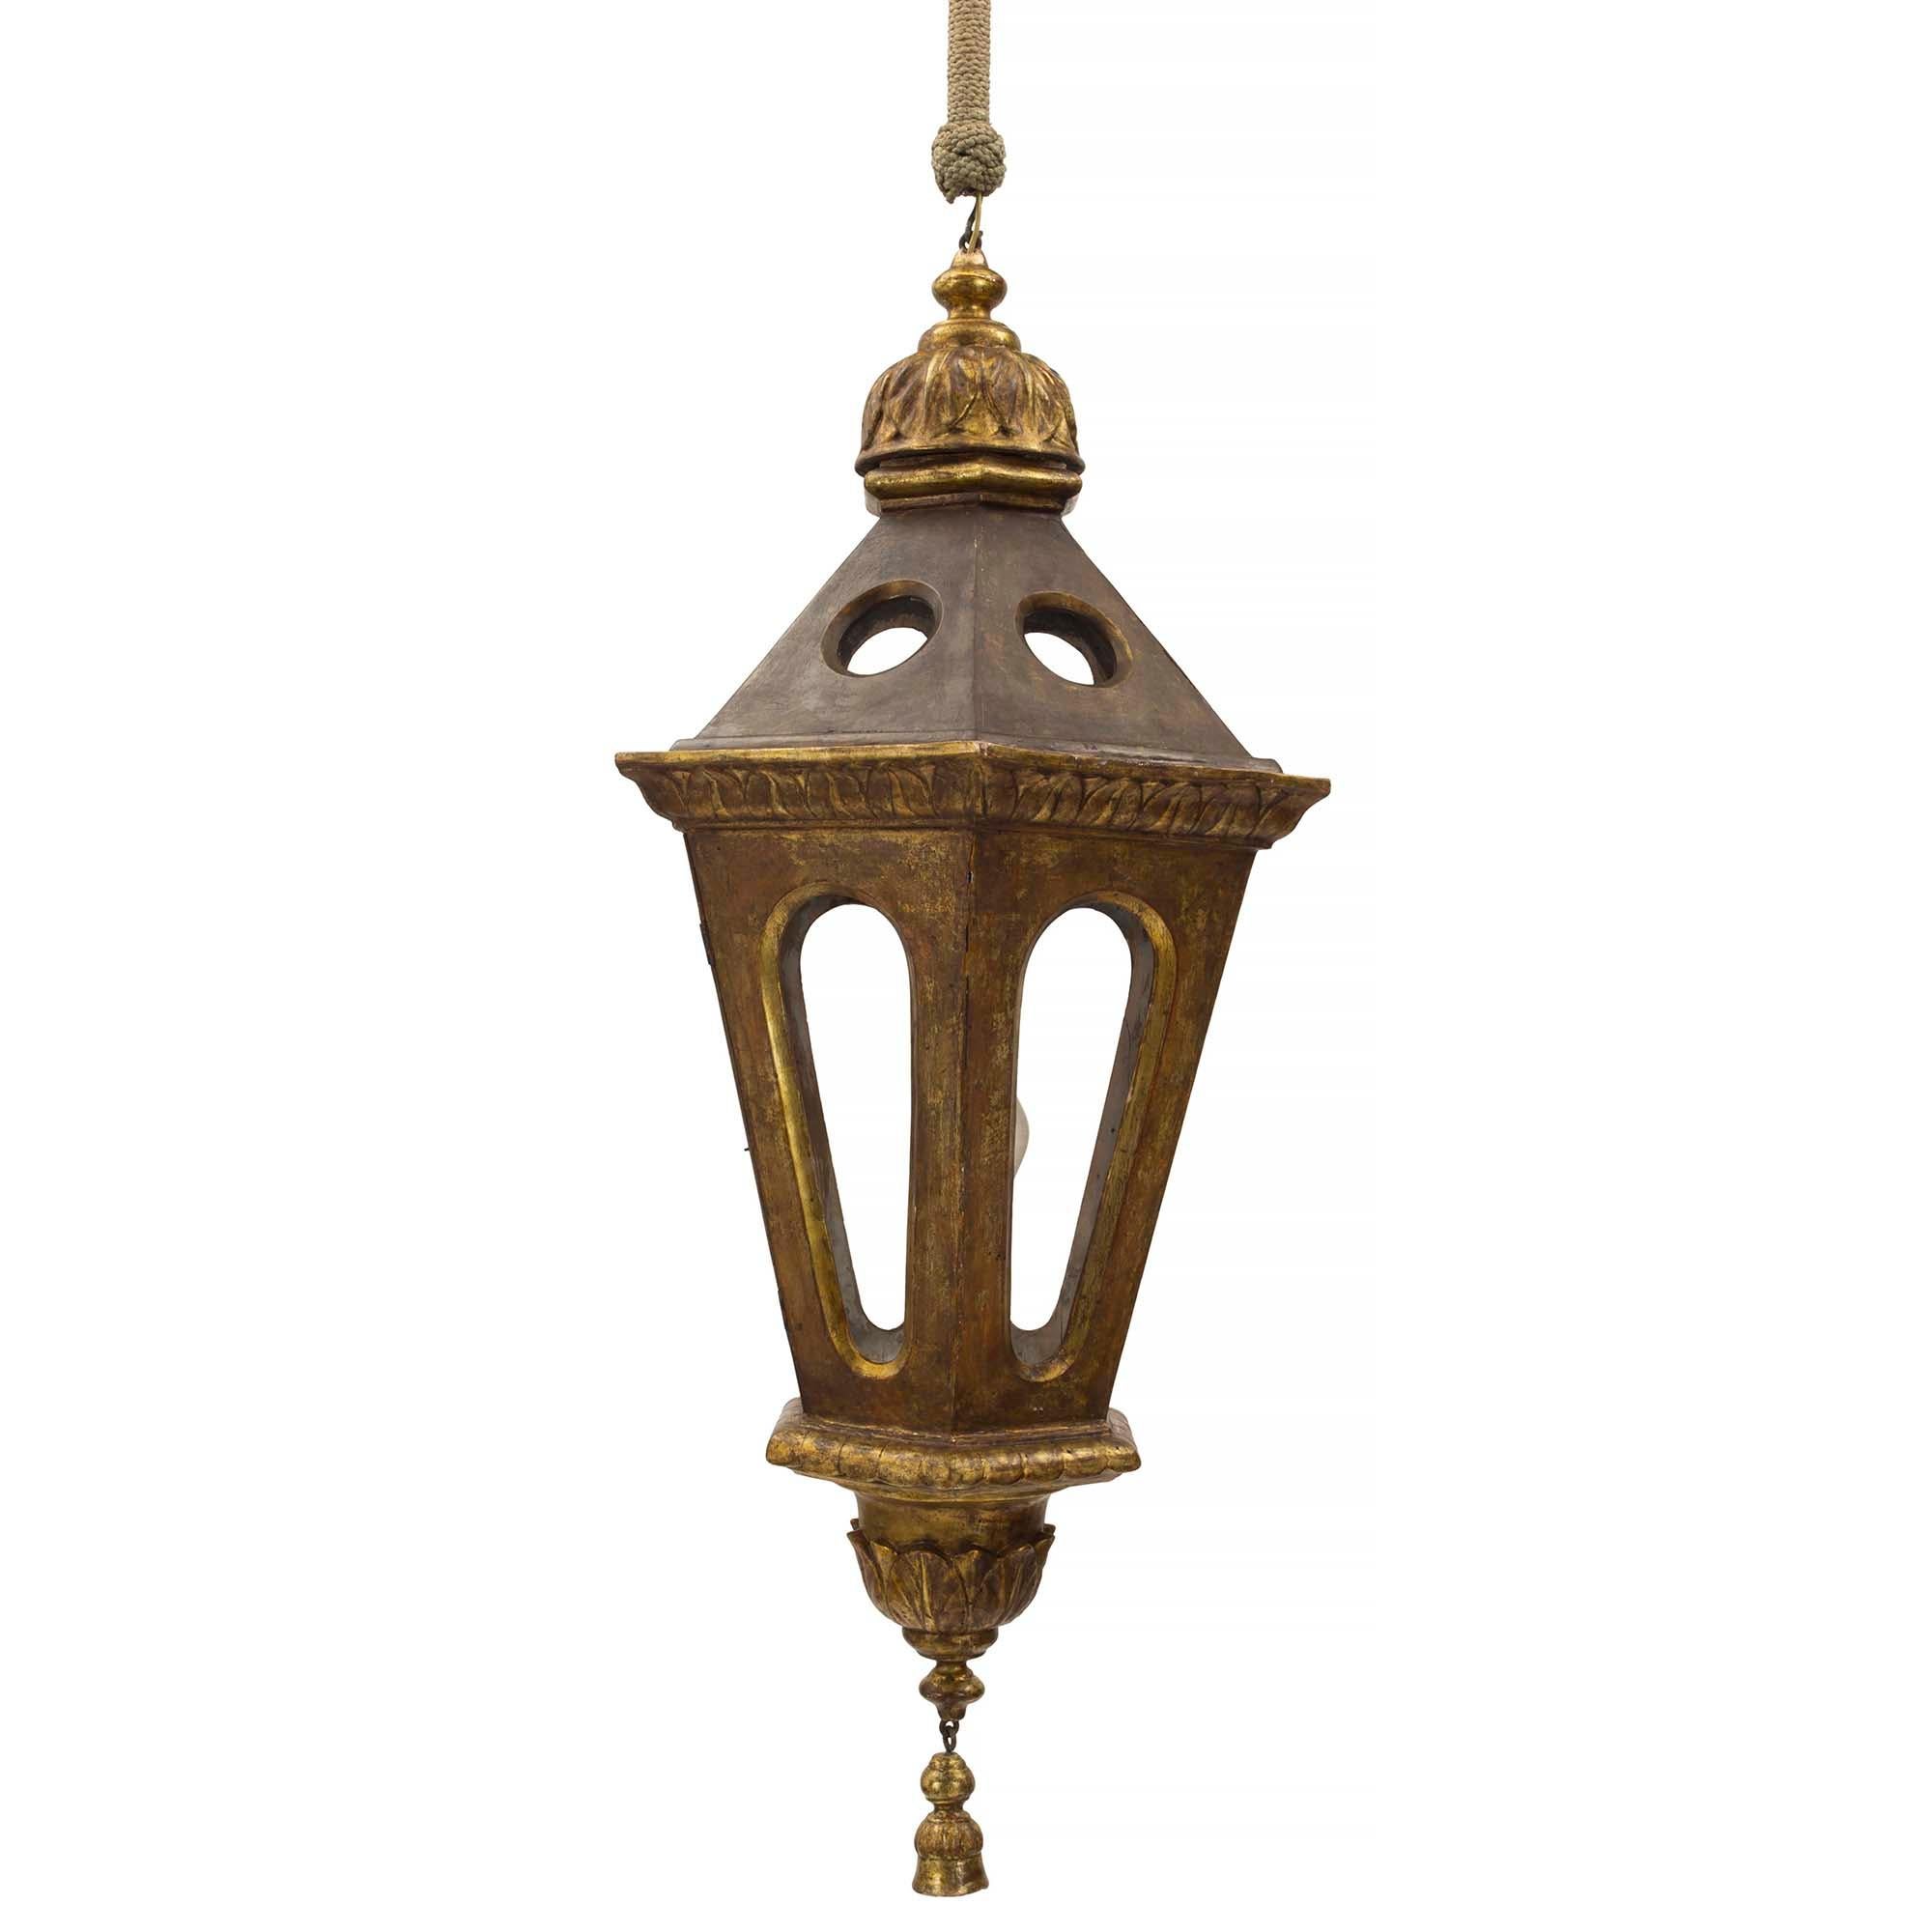 Une charmante lanterne vénitienne italienne du 18ème siècle, polychrome et à mecca. La lanterne présente un fleuron de la Mecque finement sculpté à la base, suspendu sous des motifs feuillagés. Le corps hexagonal présente des côtés ouverts abritant